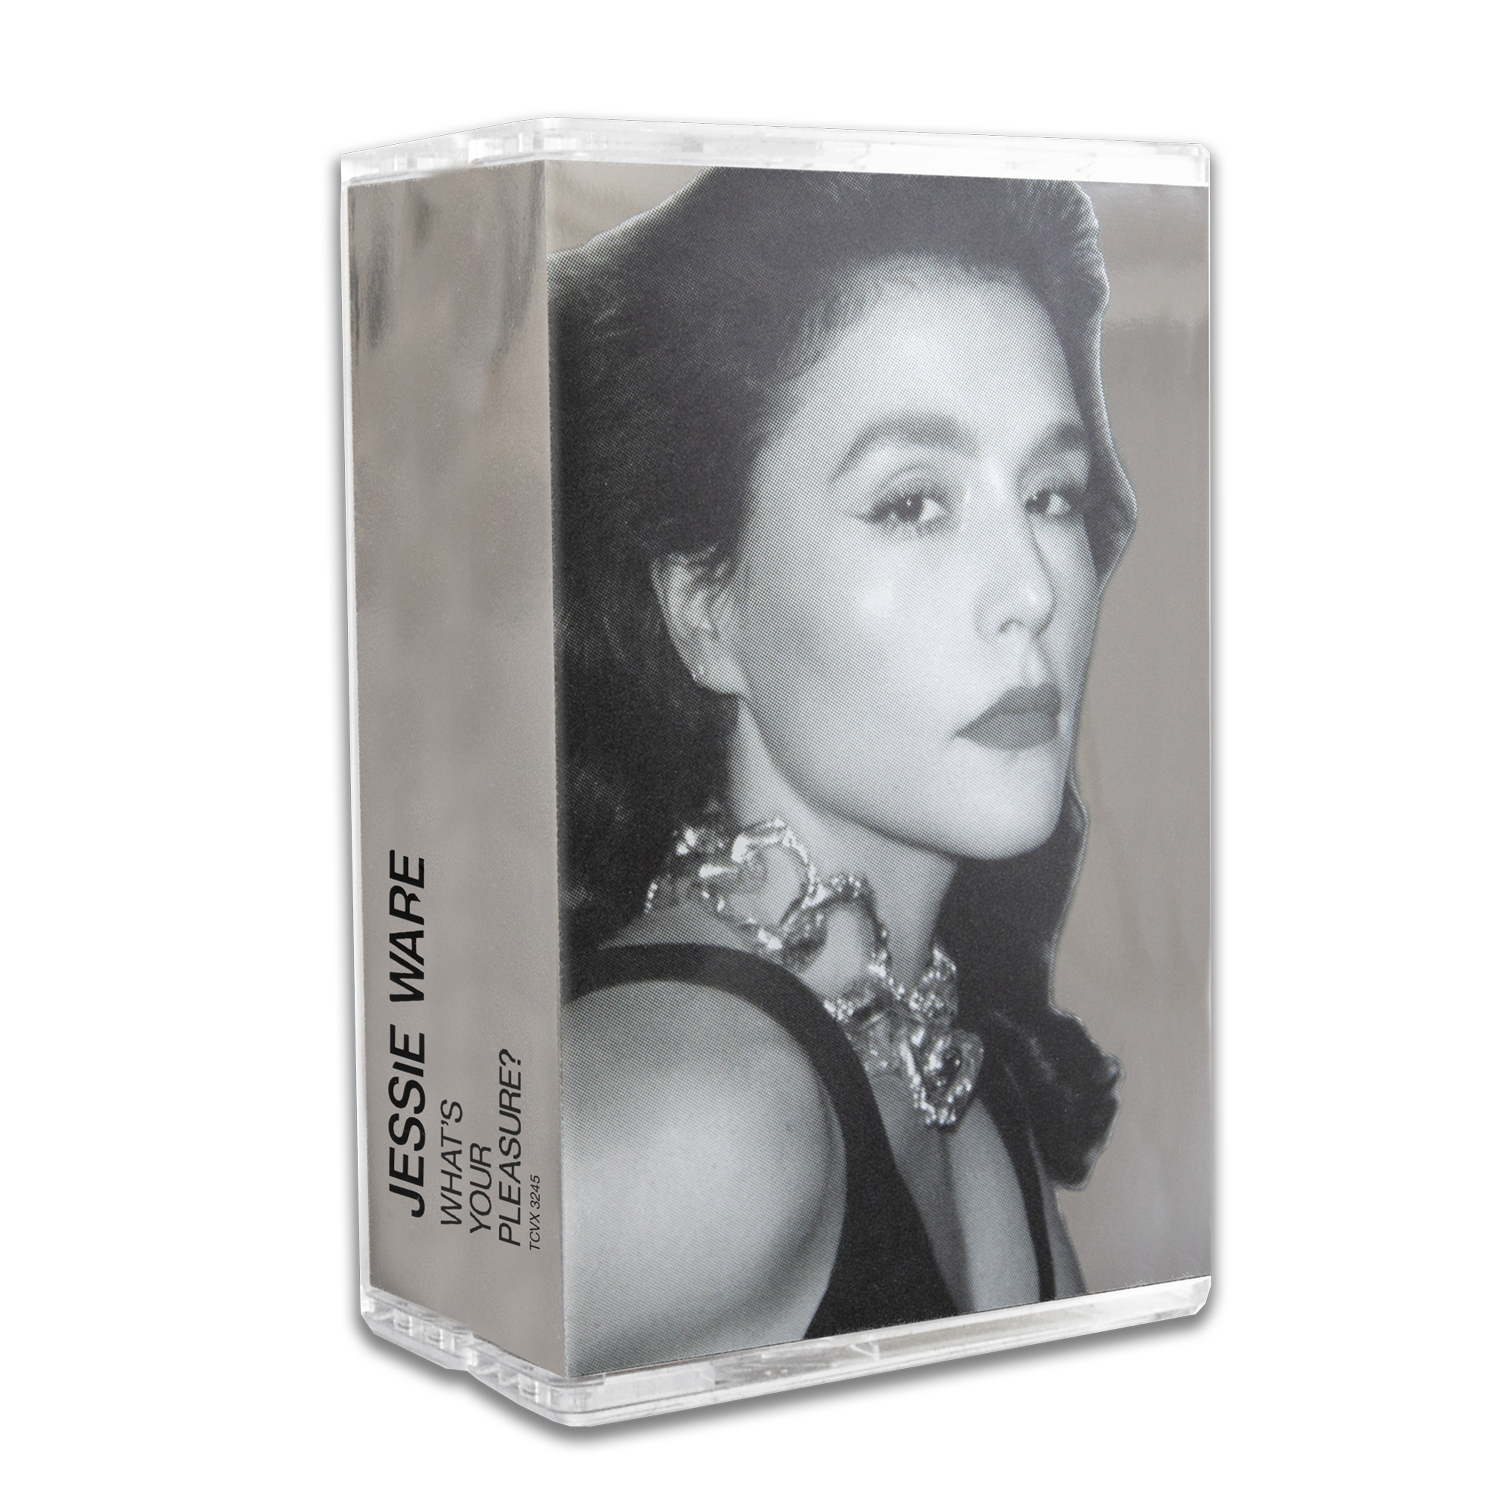 Jessie Ware - What's Your Pleasure (The Platinum Pleasure Edition) Limited Edition Cassette Set